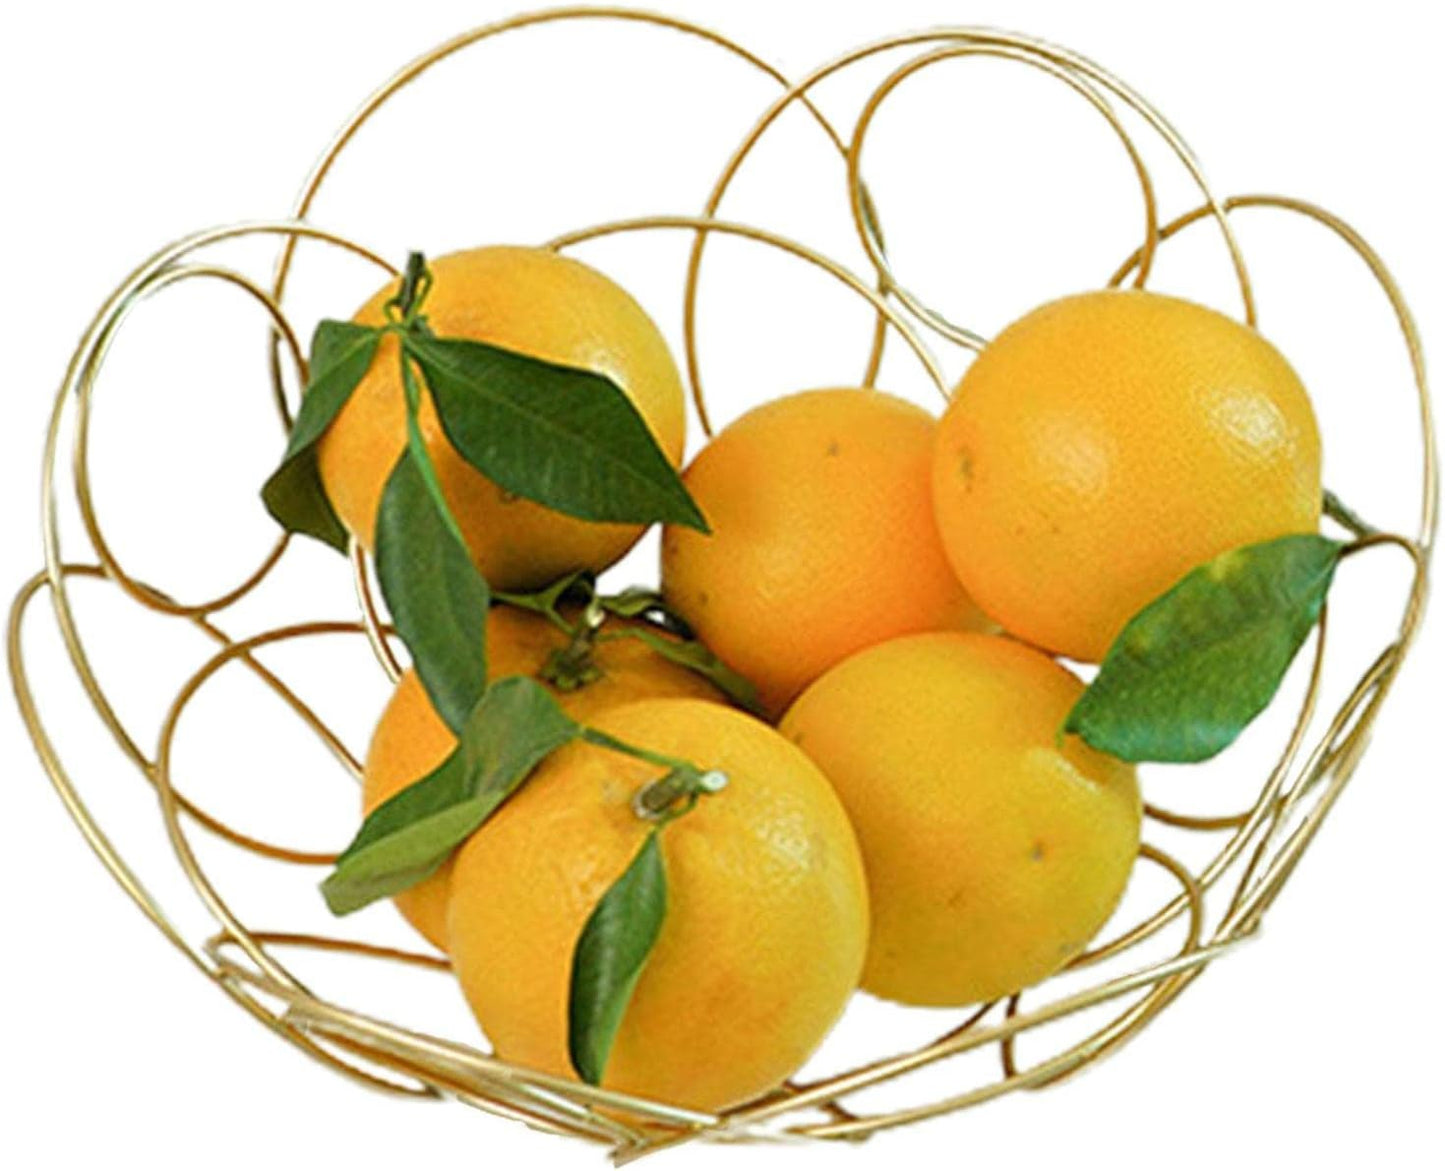 Golden Fruit basket